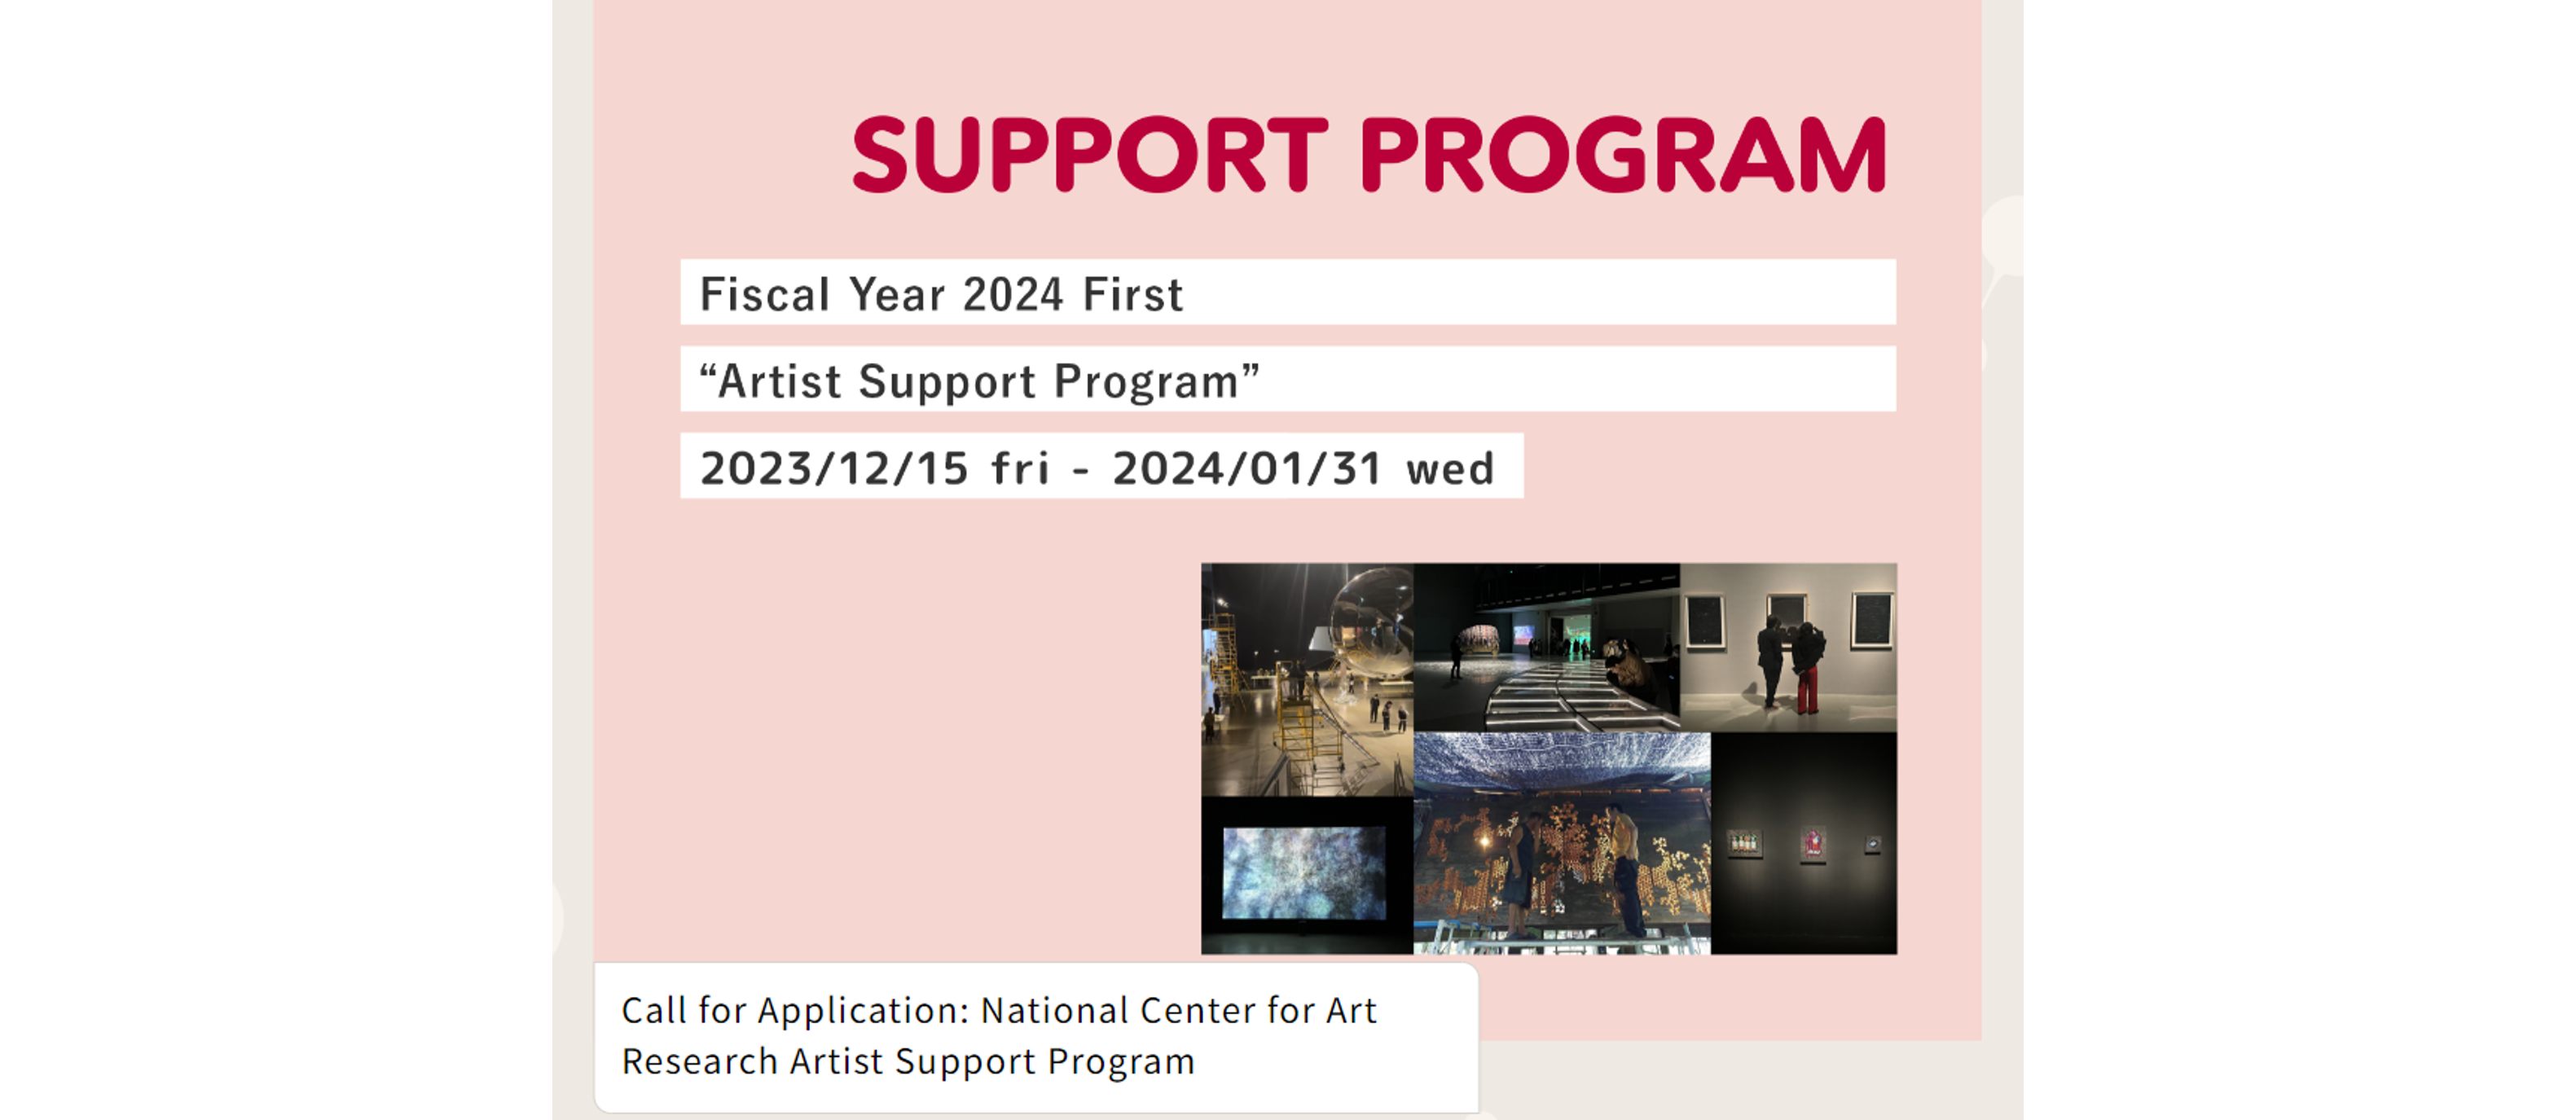 Participe de la primera versión del Programa de Apoyo al Artista para Exposiciones de Arte Internacionales en Japón